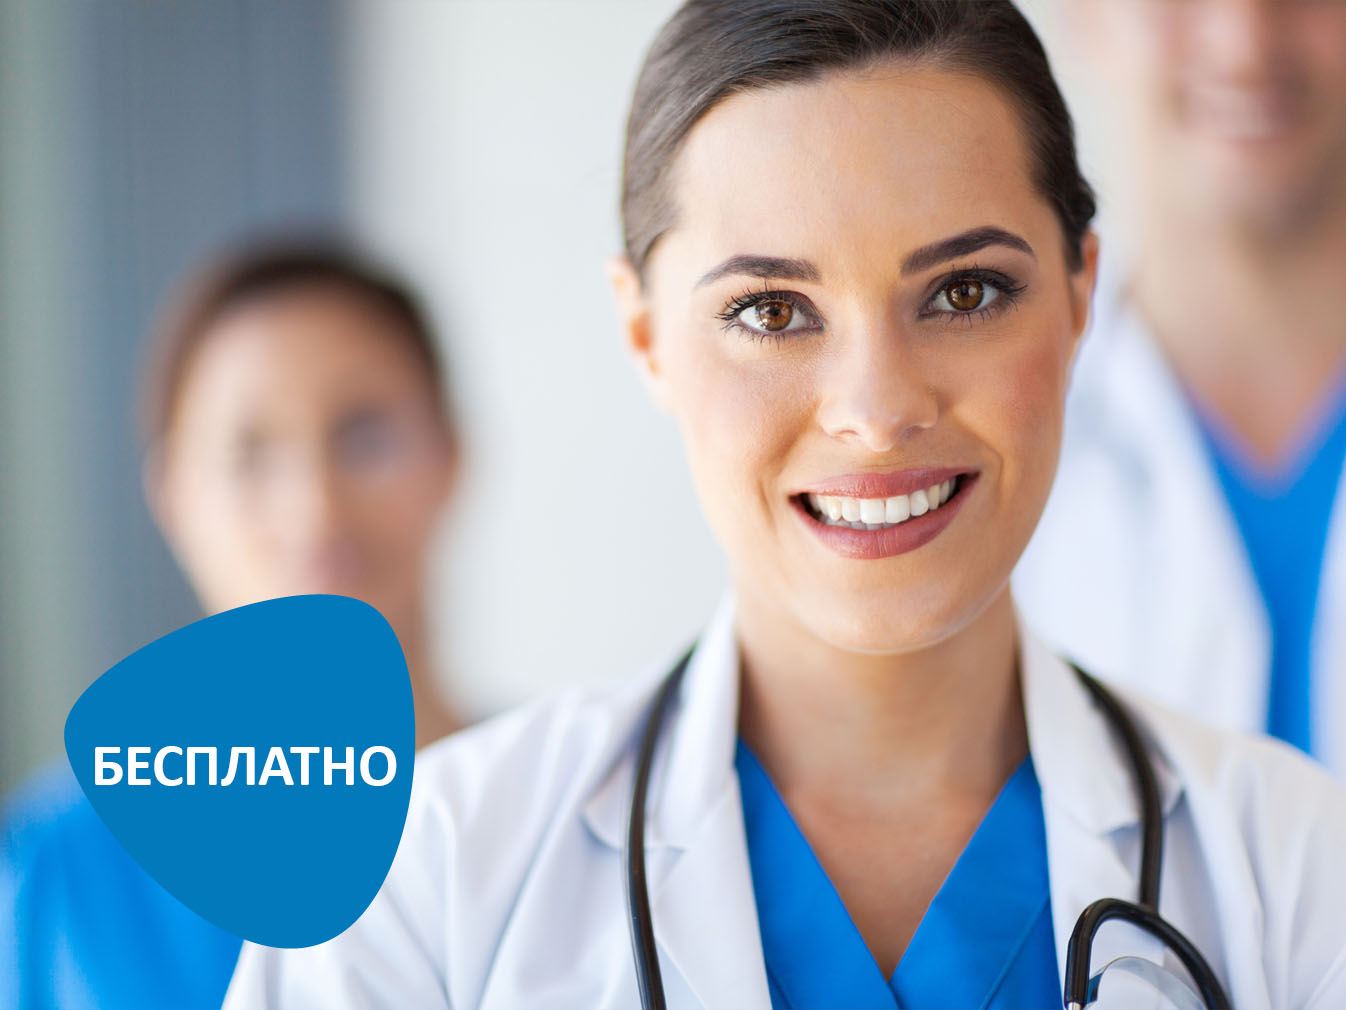 Бесплатная консультация остеопата в клинике на Бабушкинской (акция завершена)